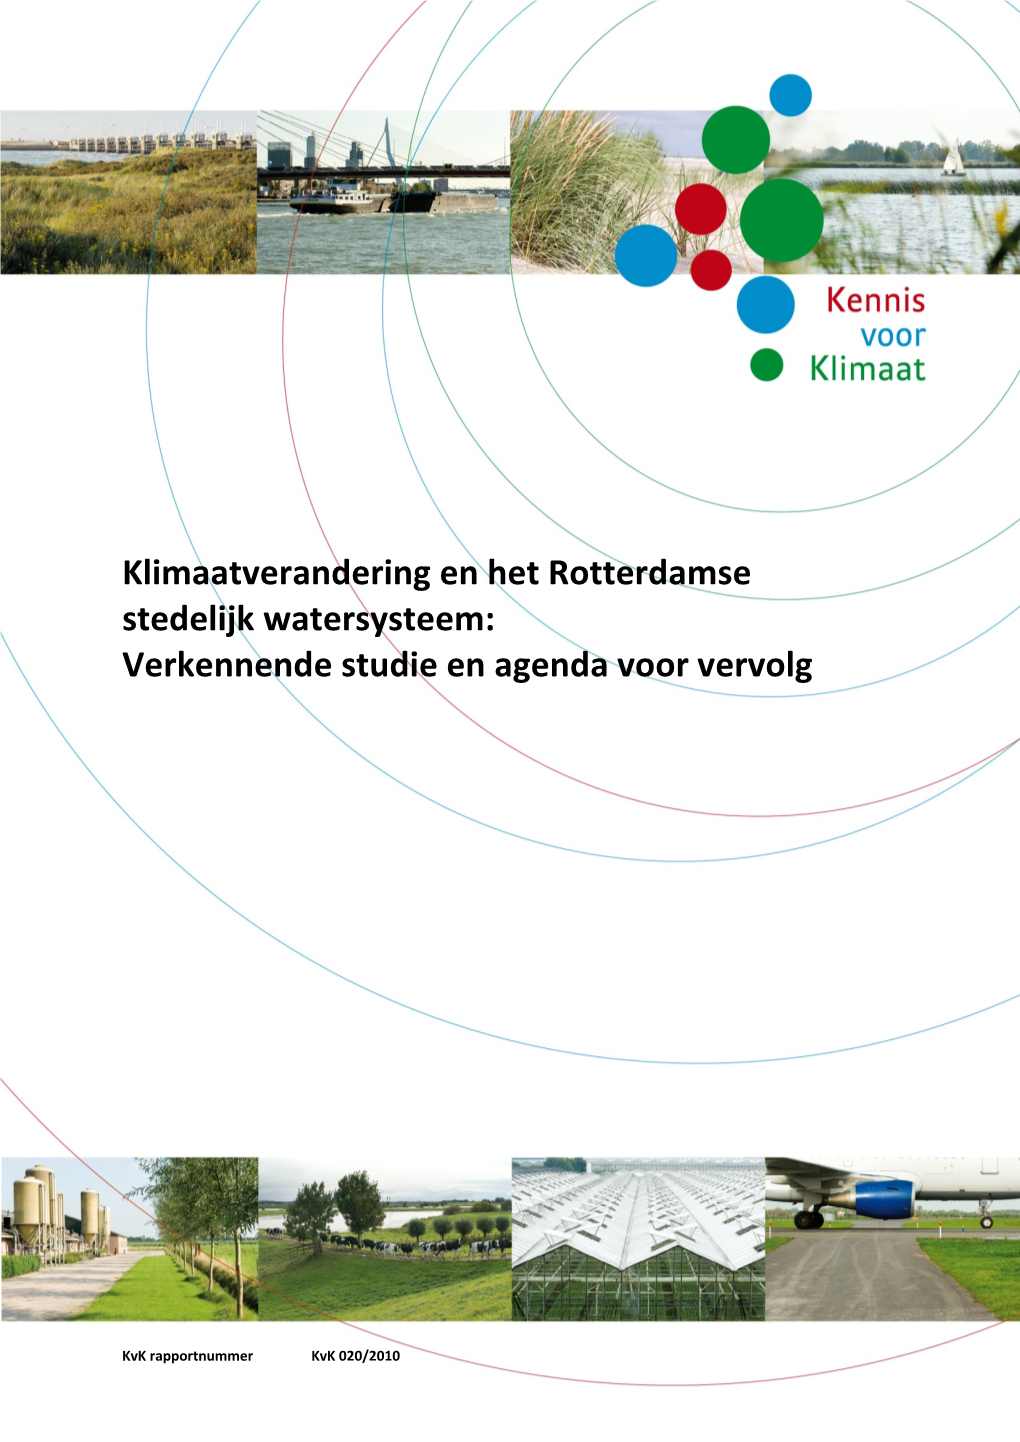 Klimaatverandering En Het Rotterdamse Stedelijk Watersysteem: Verkennende Studie En Agenda Voor Vervolg